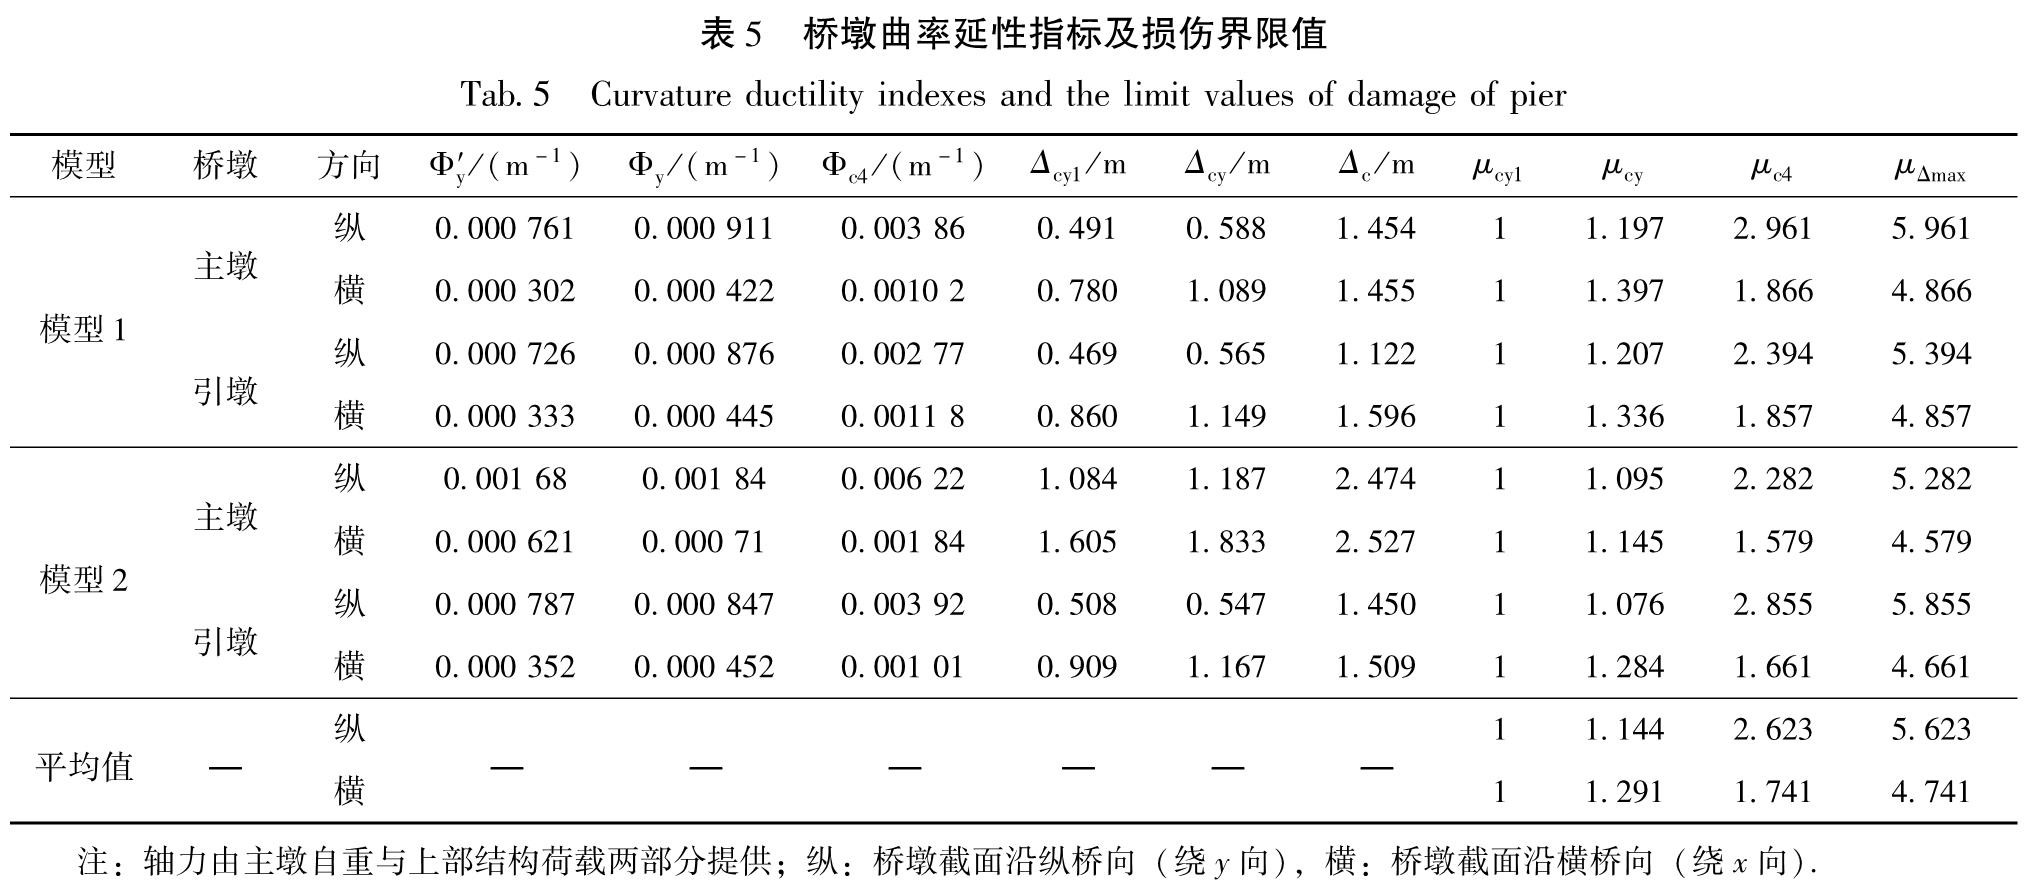 表5 桥墩曲率延性指标及损伤界限值<br/>Tab.5 Curvature ductility indexes and the limit values of damage of pier